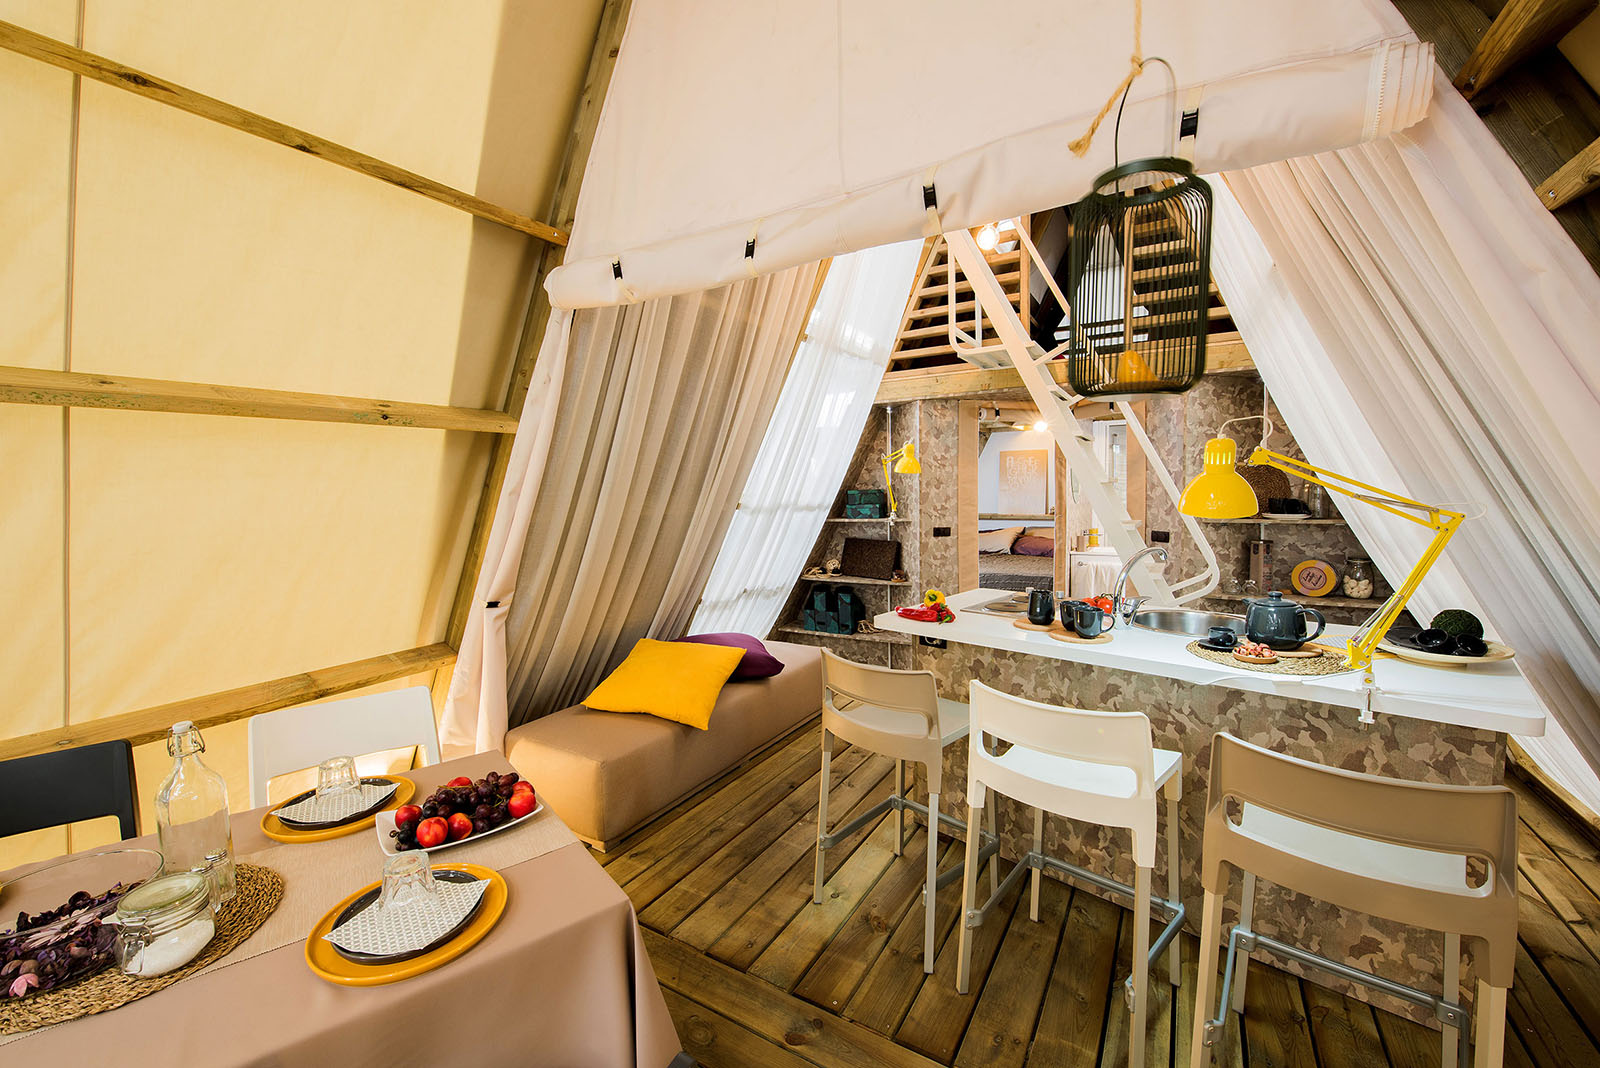 Location - Luxury Lodge Tente - Camping Village Europa Silvella